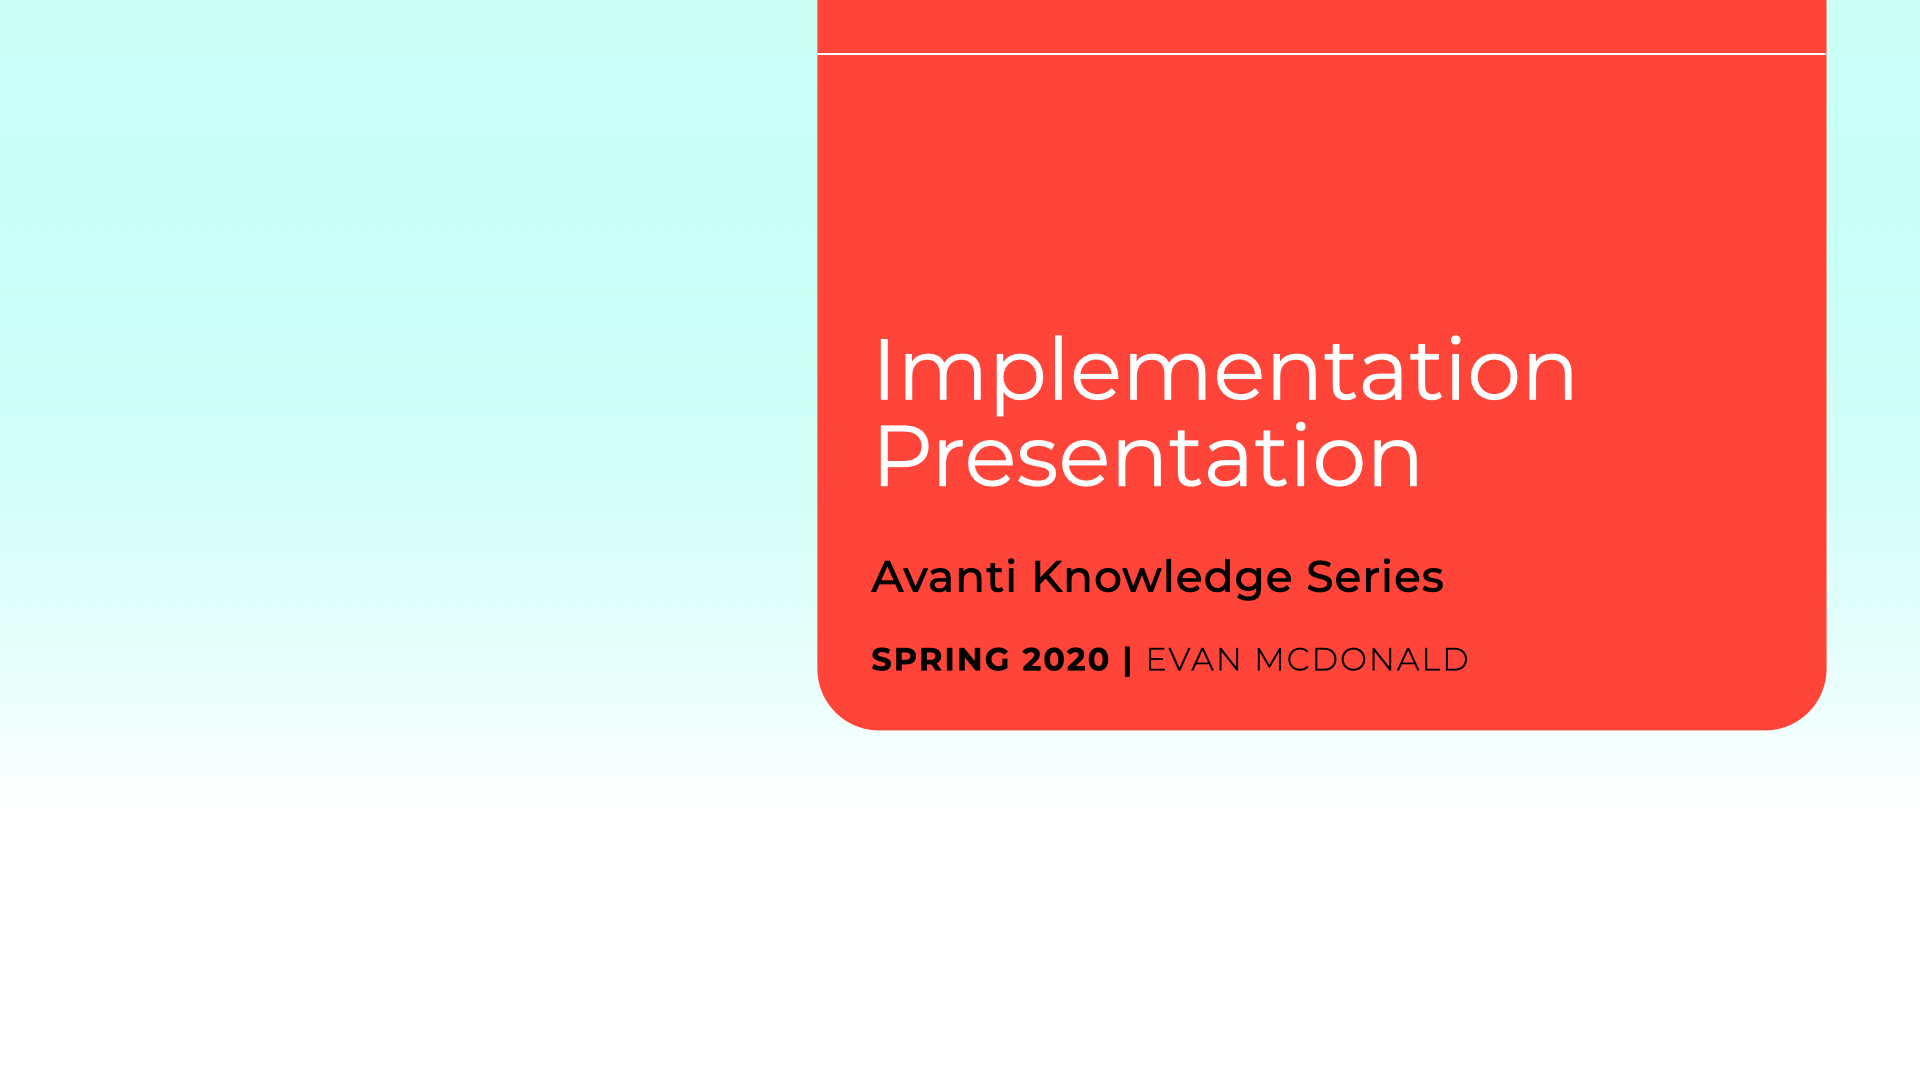 Implementation Presentation